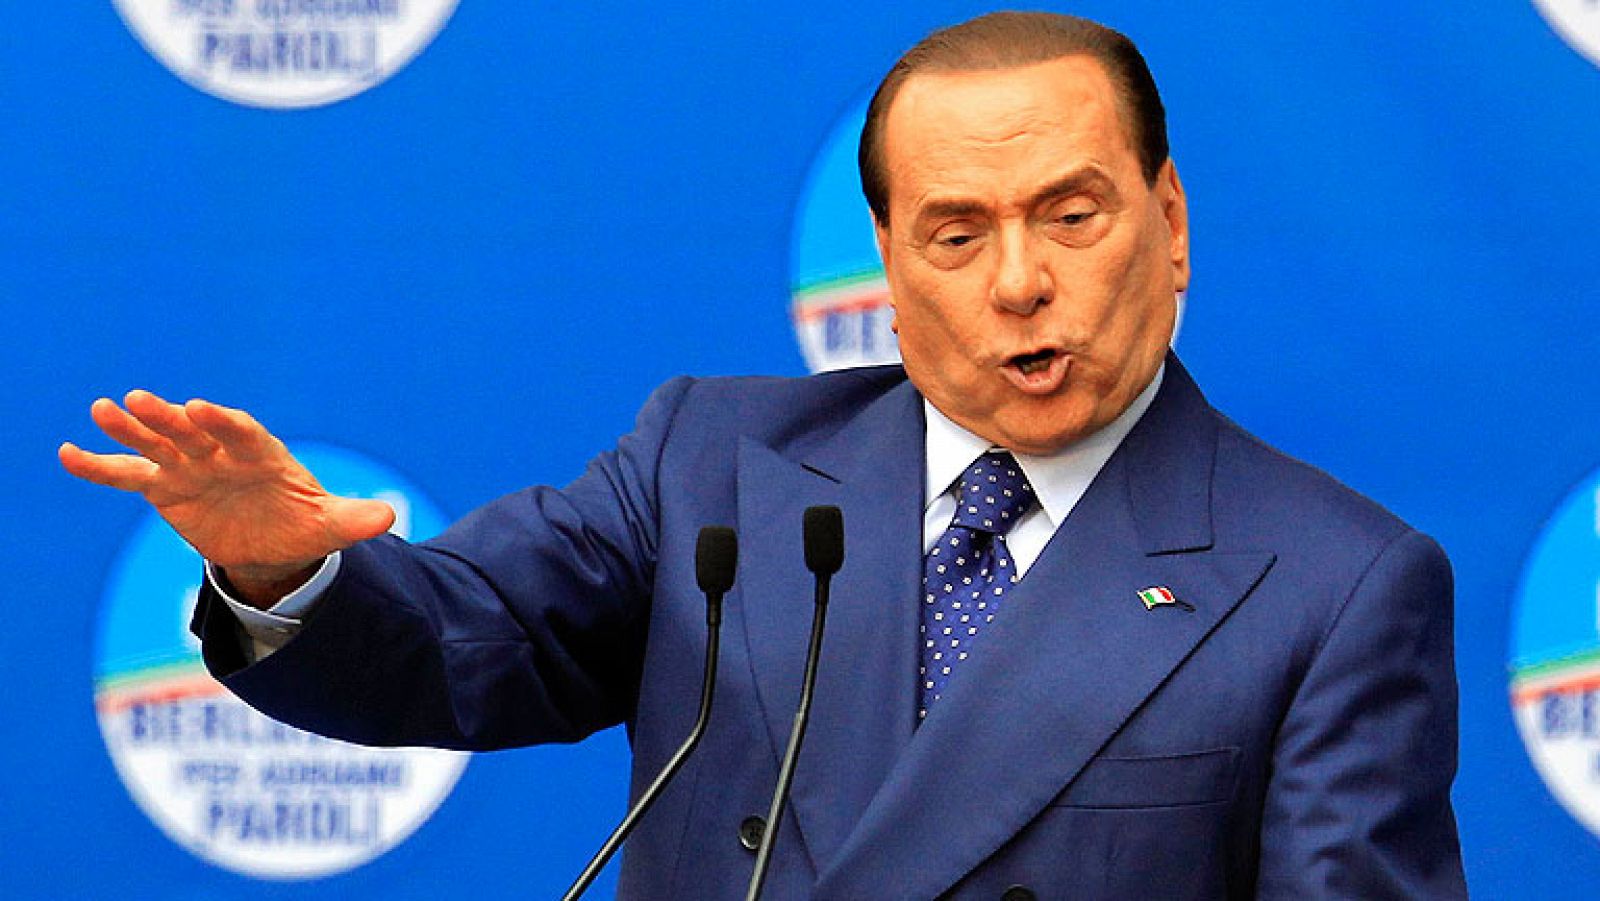  La Fiscalía de Milán ha solicitado este lunes seis años de prisión e inhabilitación de por vida para cargo público para el ex primer ministro italiano Silvio Berlusconi por el caso Ruby, en el que el empresario y político conservador está acusado de abuso de poder e incitación a la prostitución de menores.